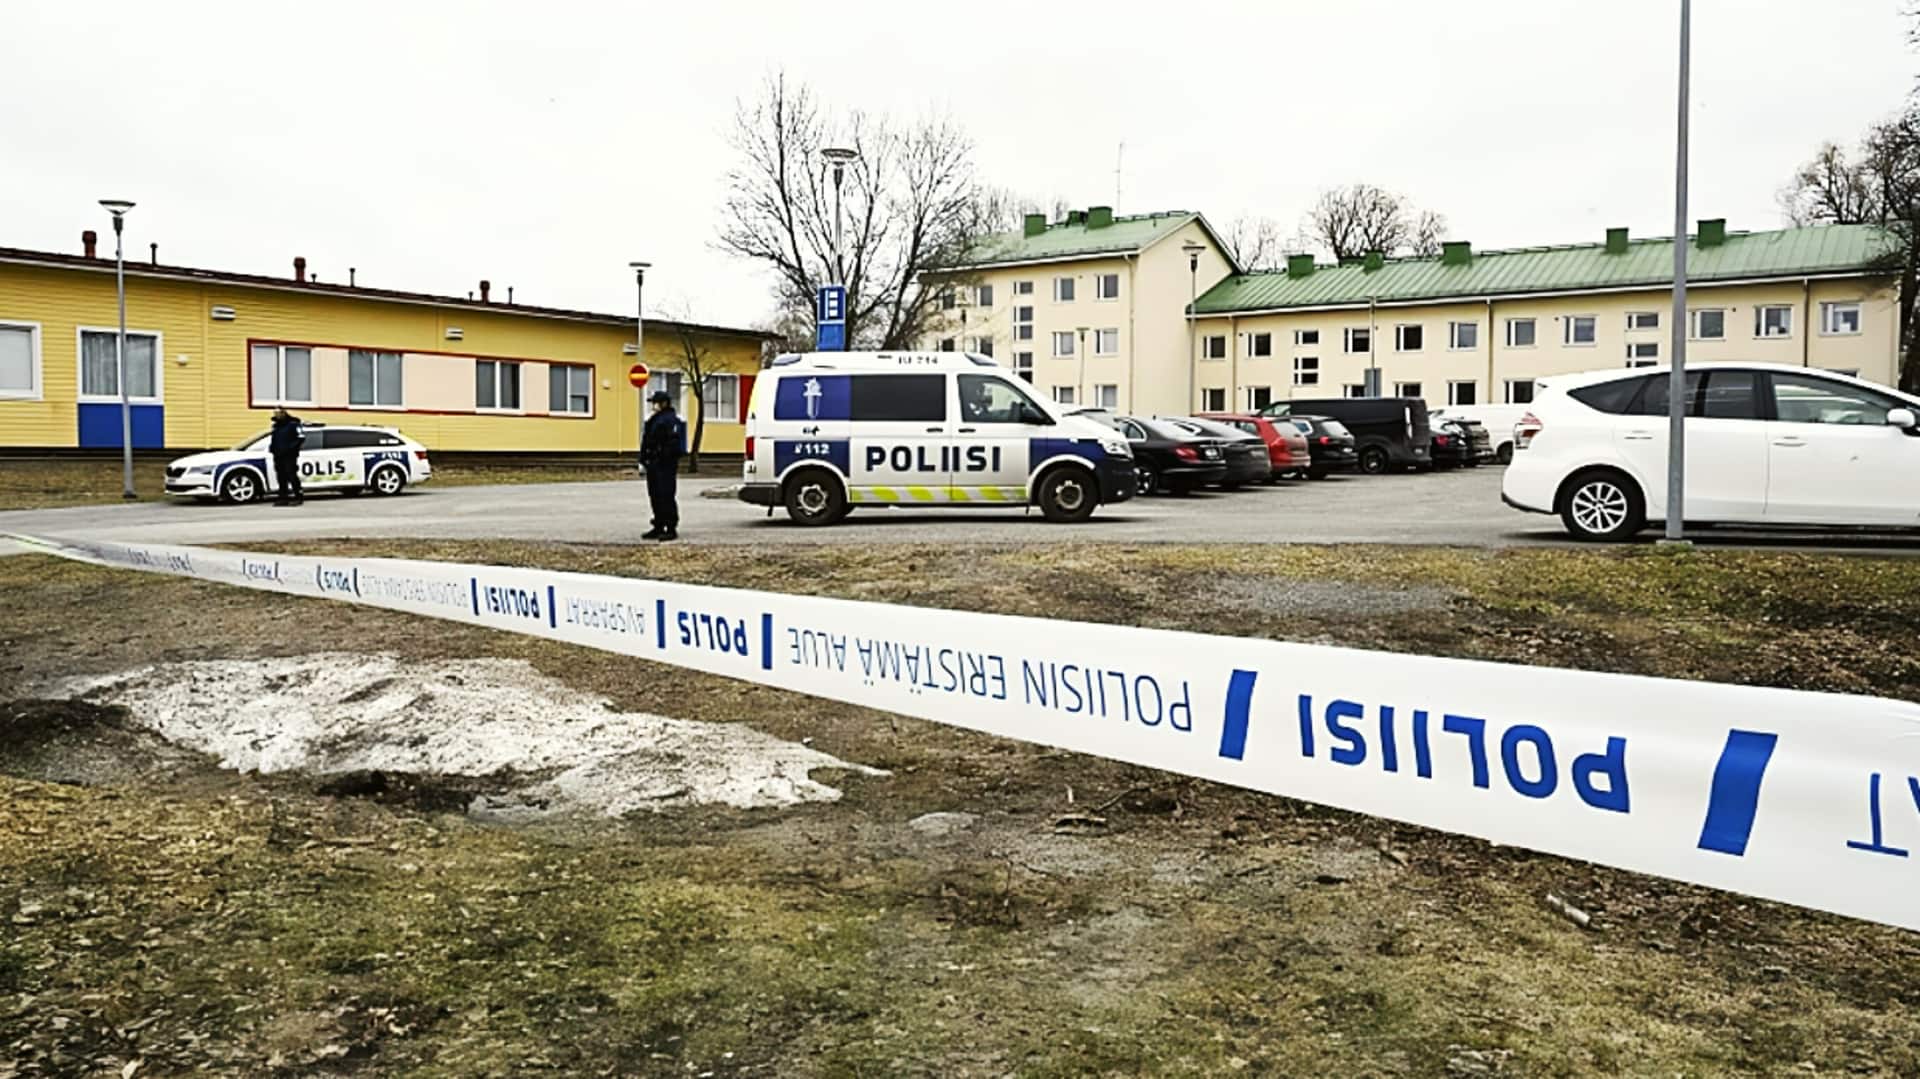 फिनलैंड की राजधानी के पास स्कूल में गोलीबारी; 13 वर्षीय बच्चे की मौत, 2 घायल